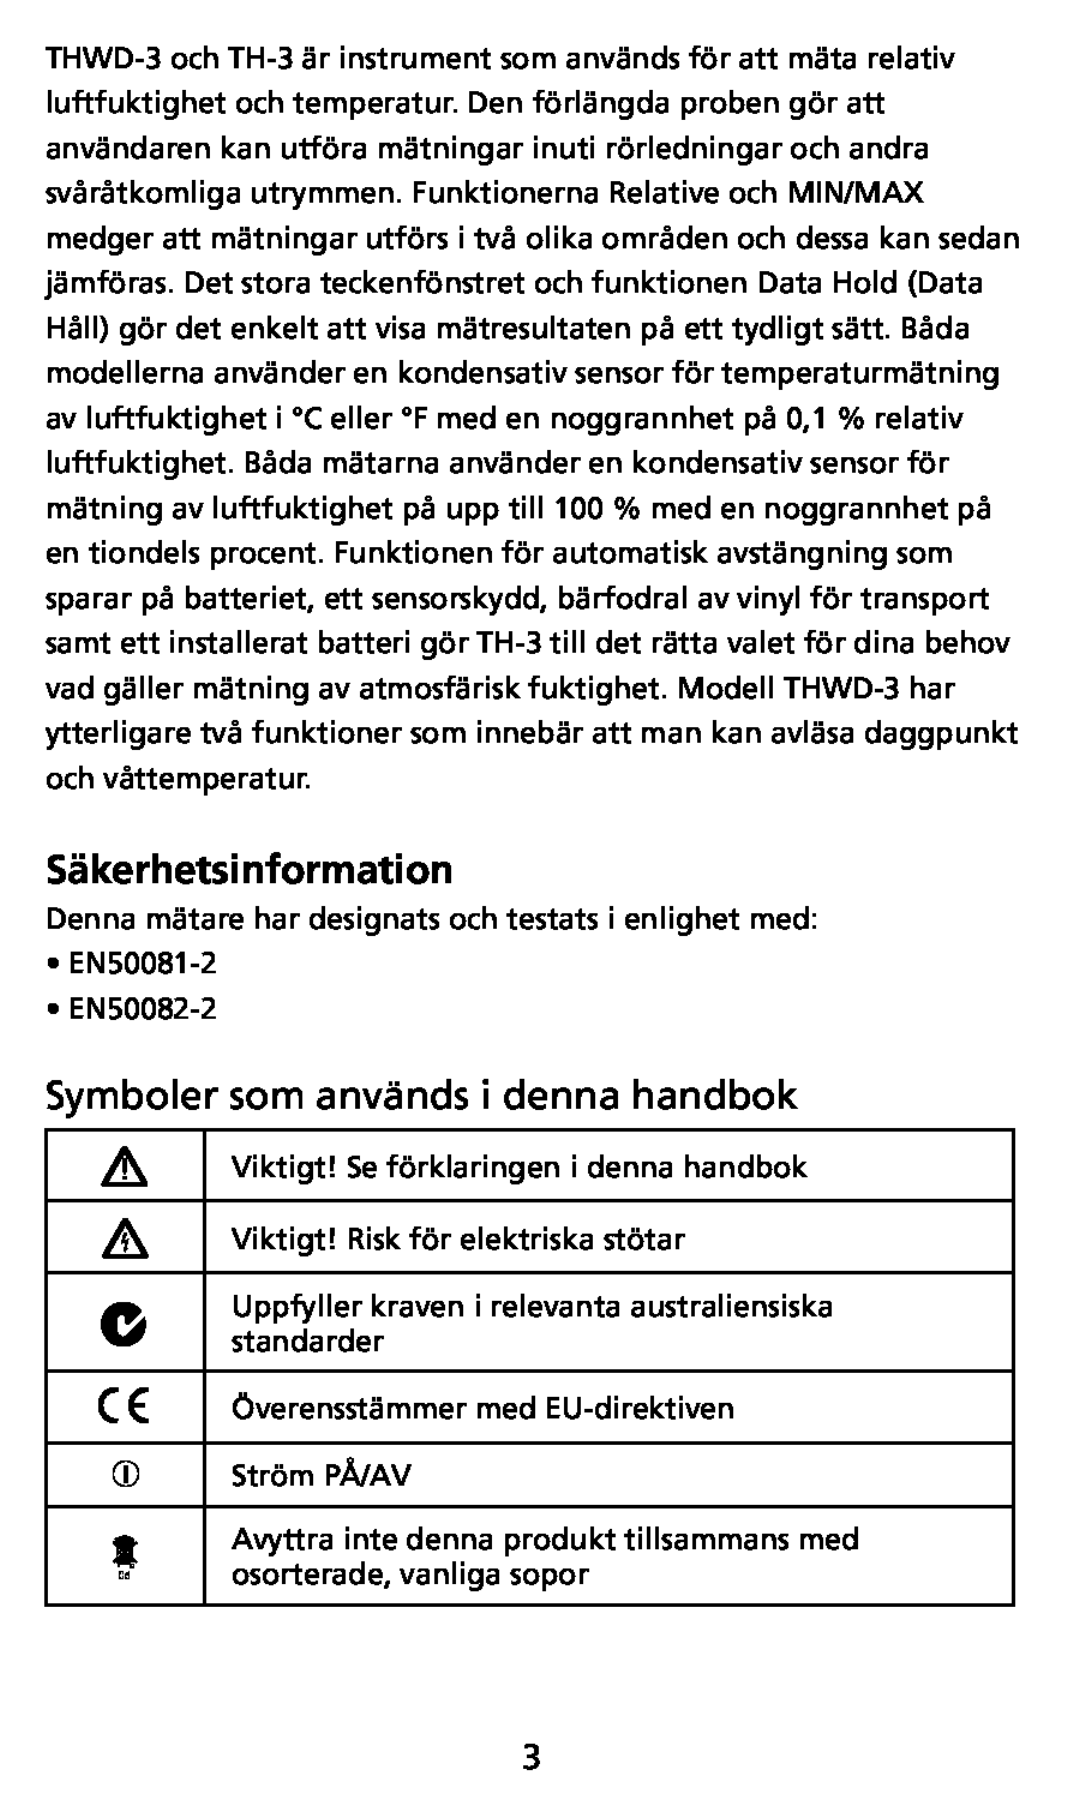 Ampro Corporation THWD-3, TH-3 user manual Säkerhetsinformation, Symboler som används i denna handbok 